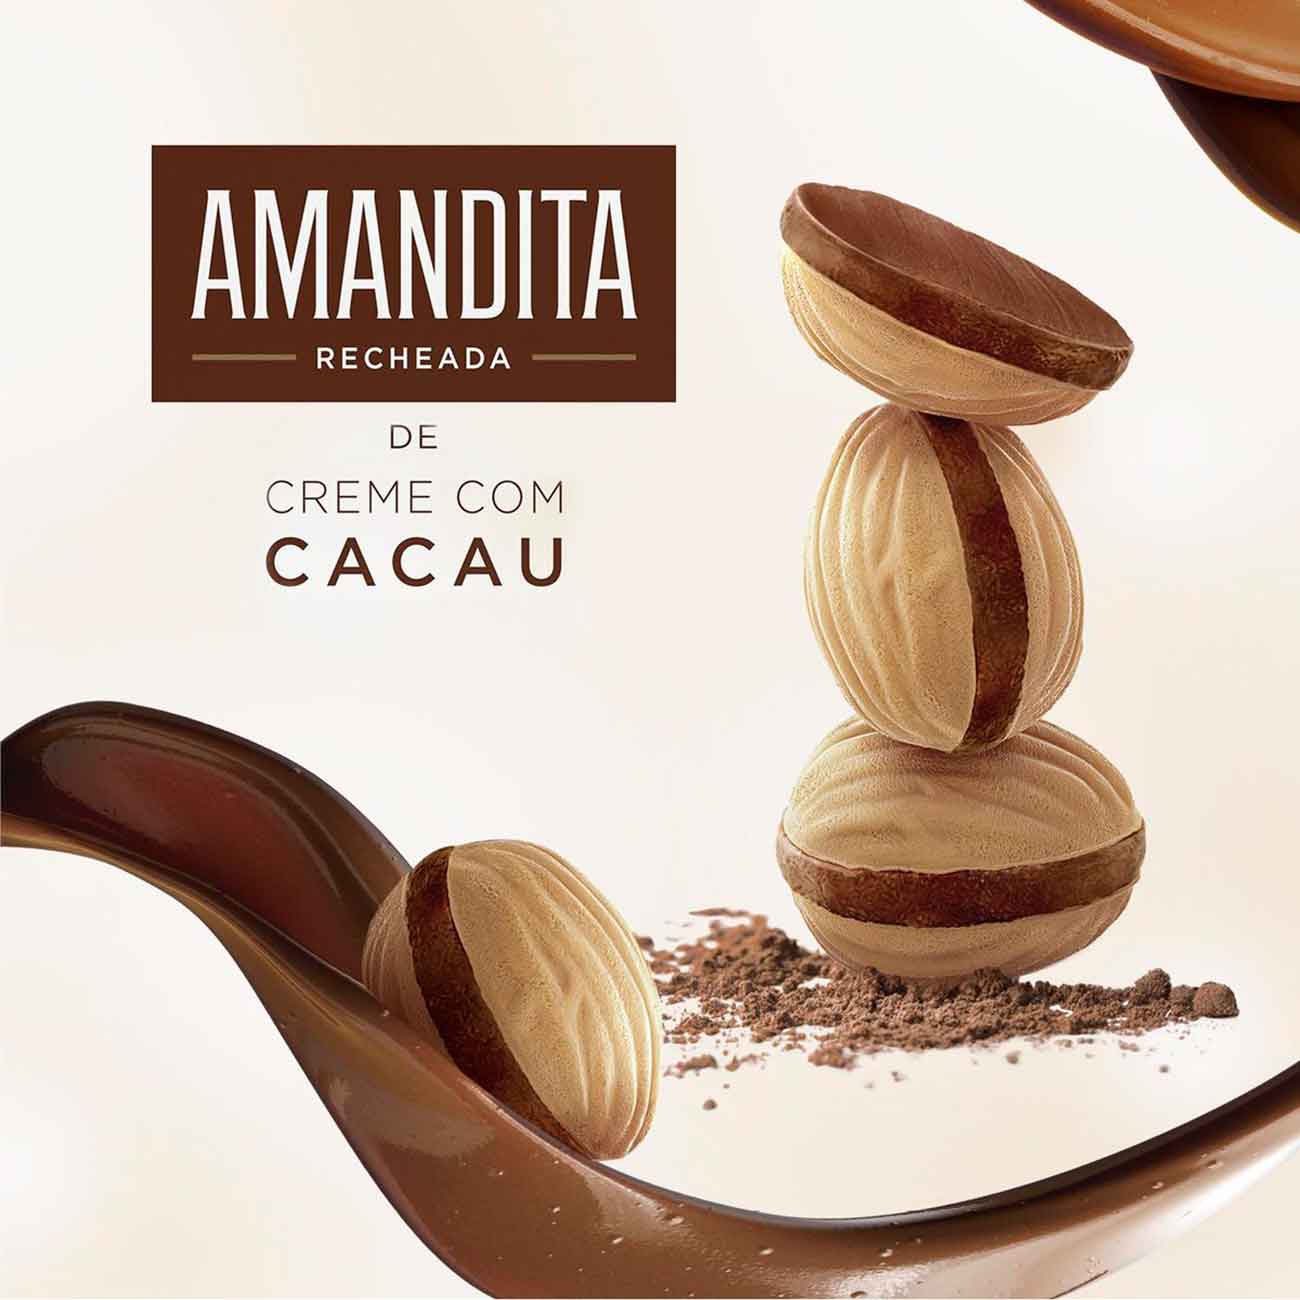 Chocolate Amandita 200g